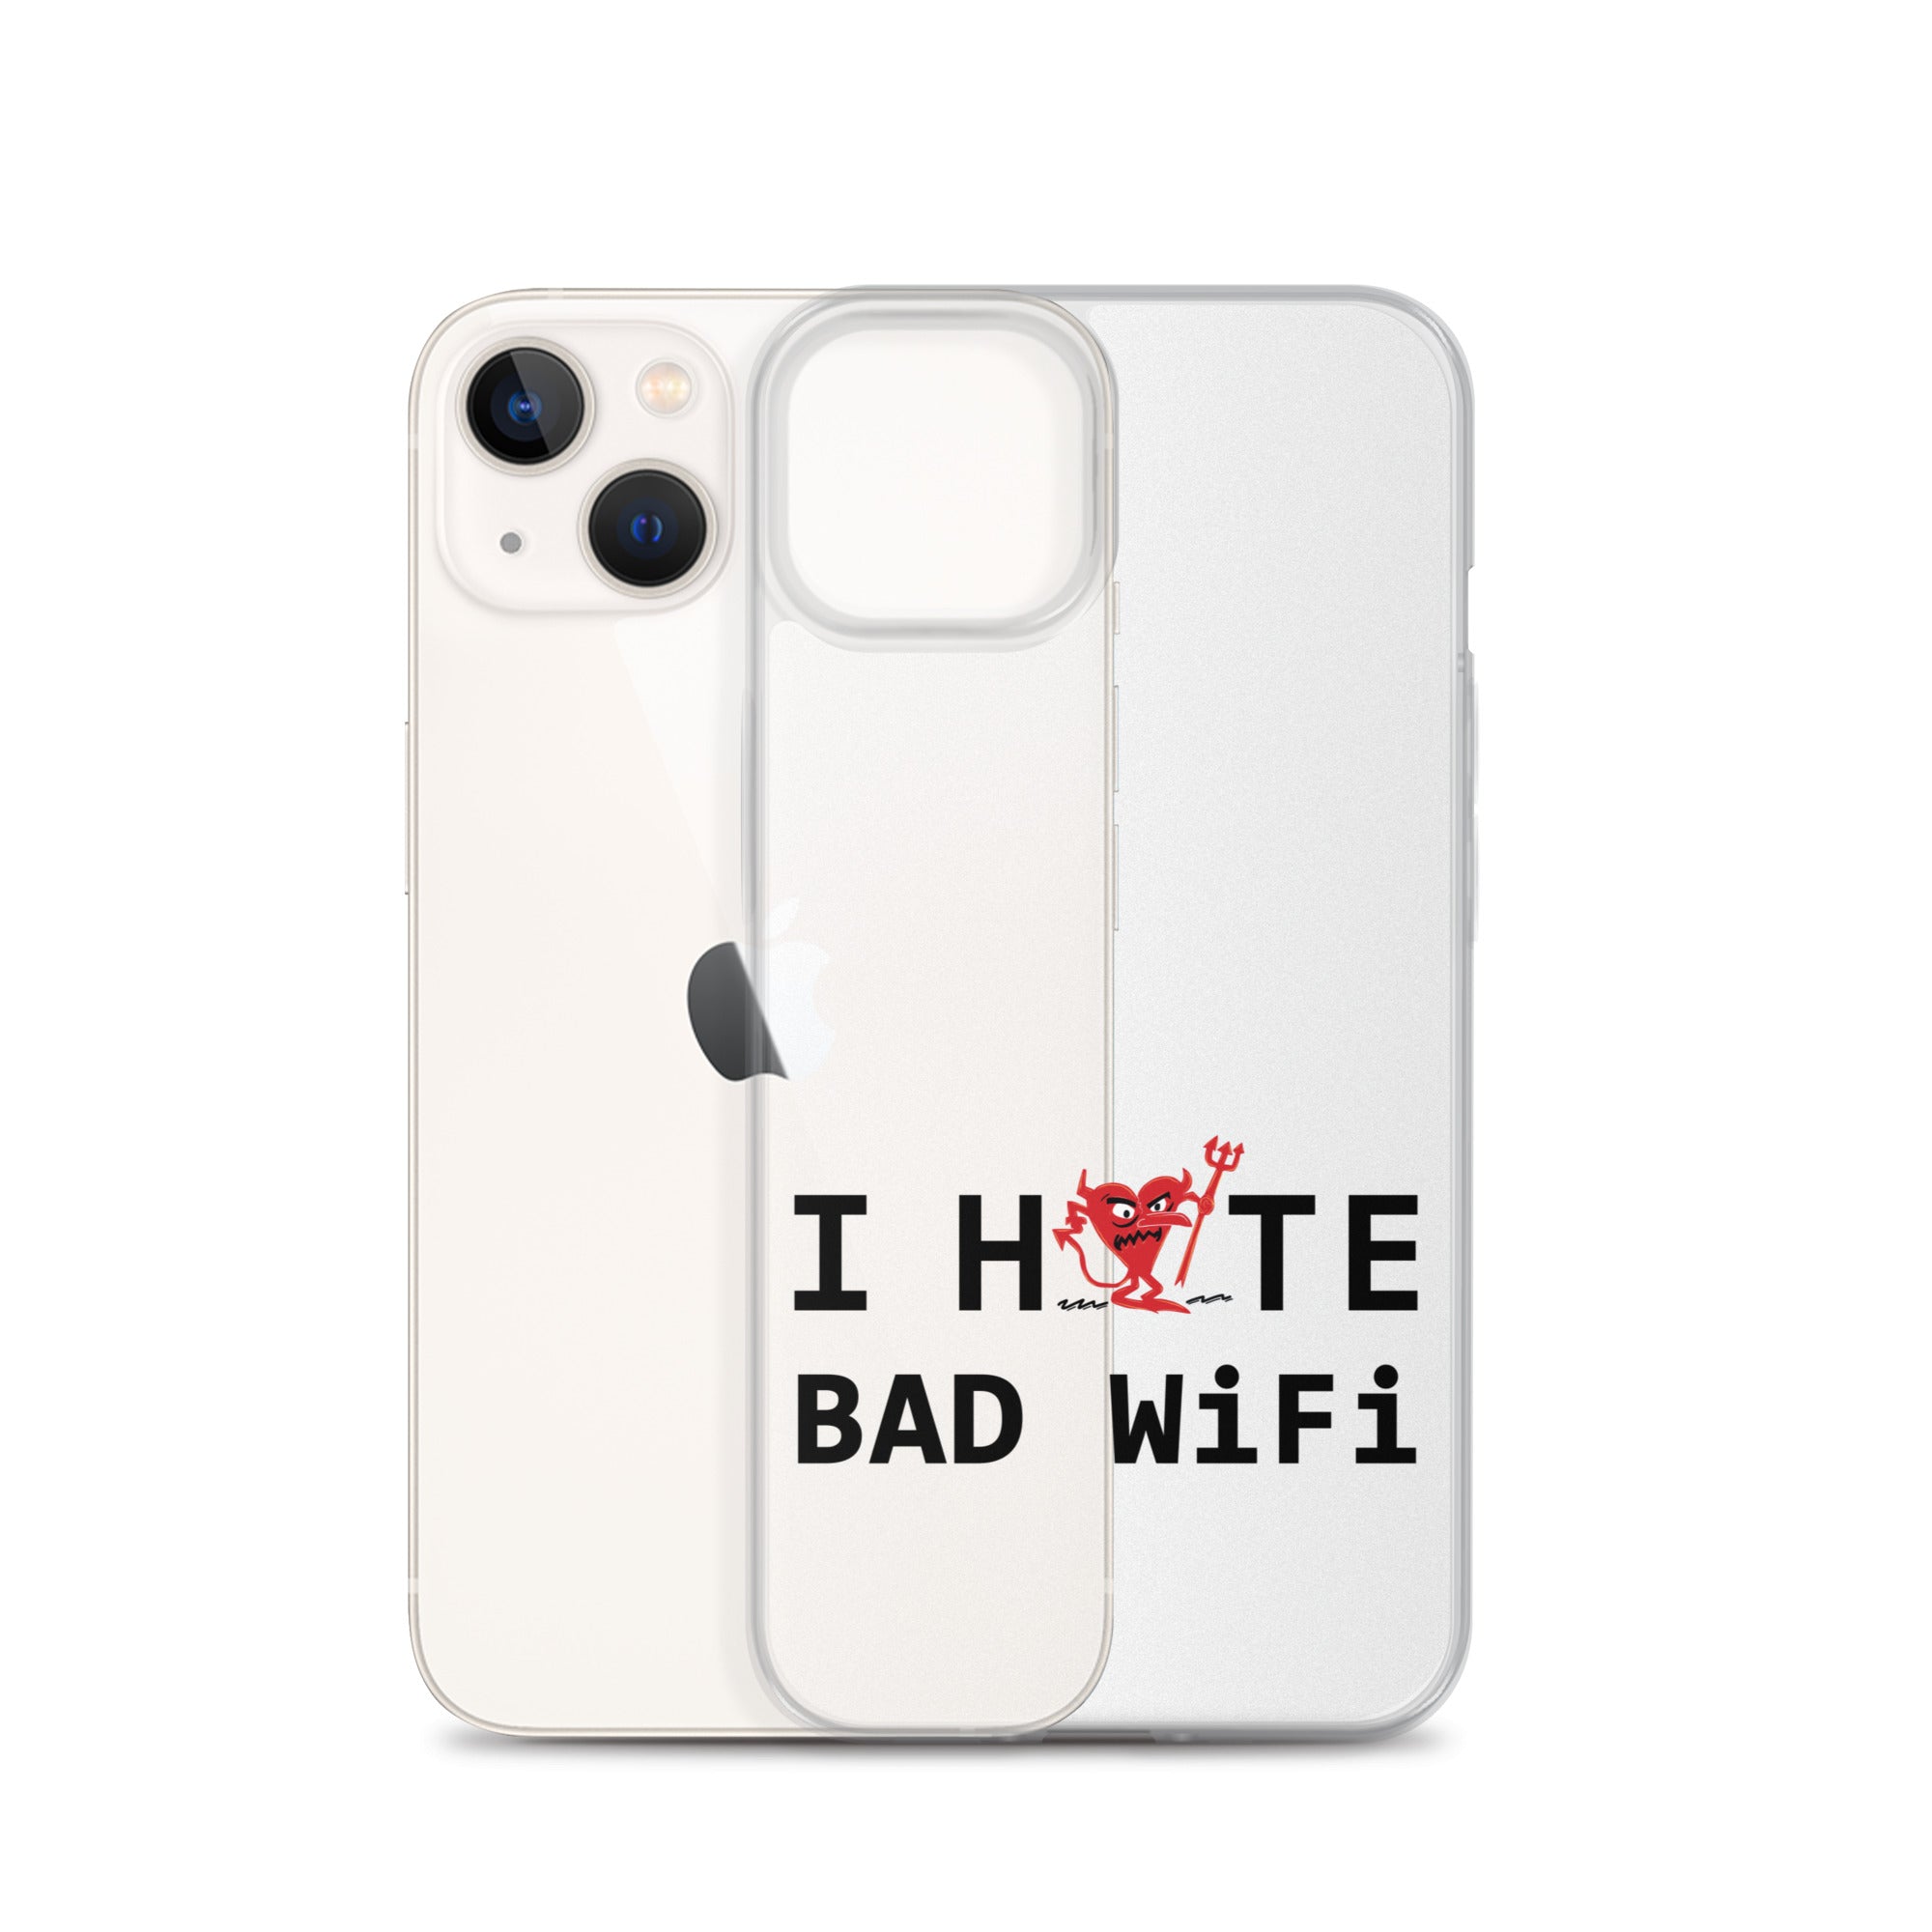 I Hate Bad WIFI iPhone Case